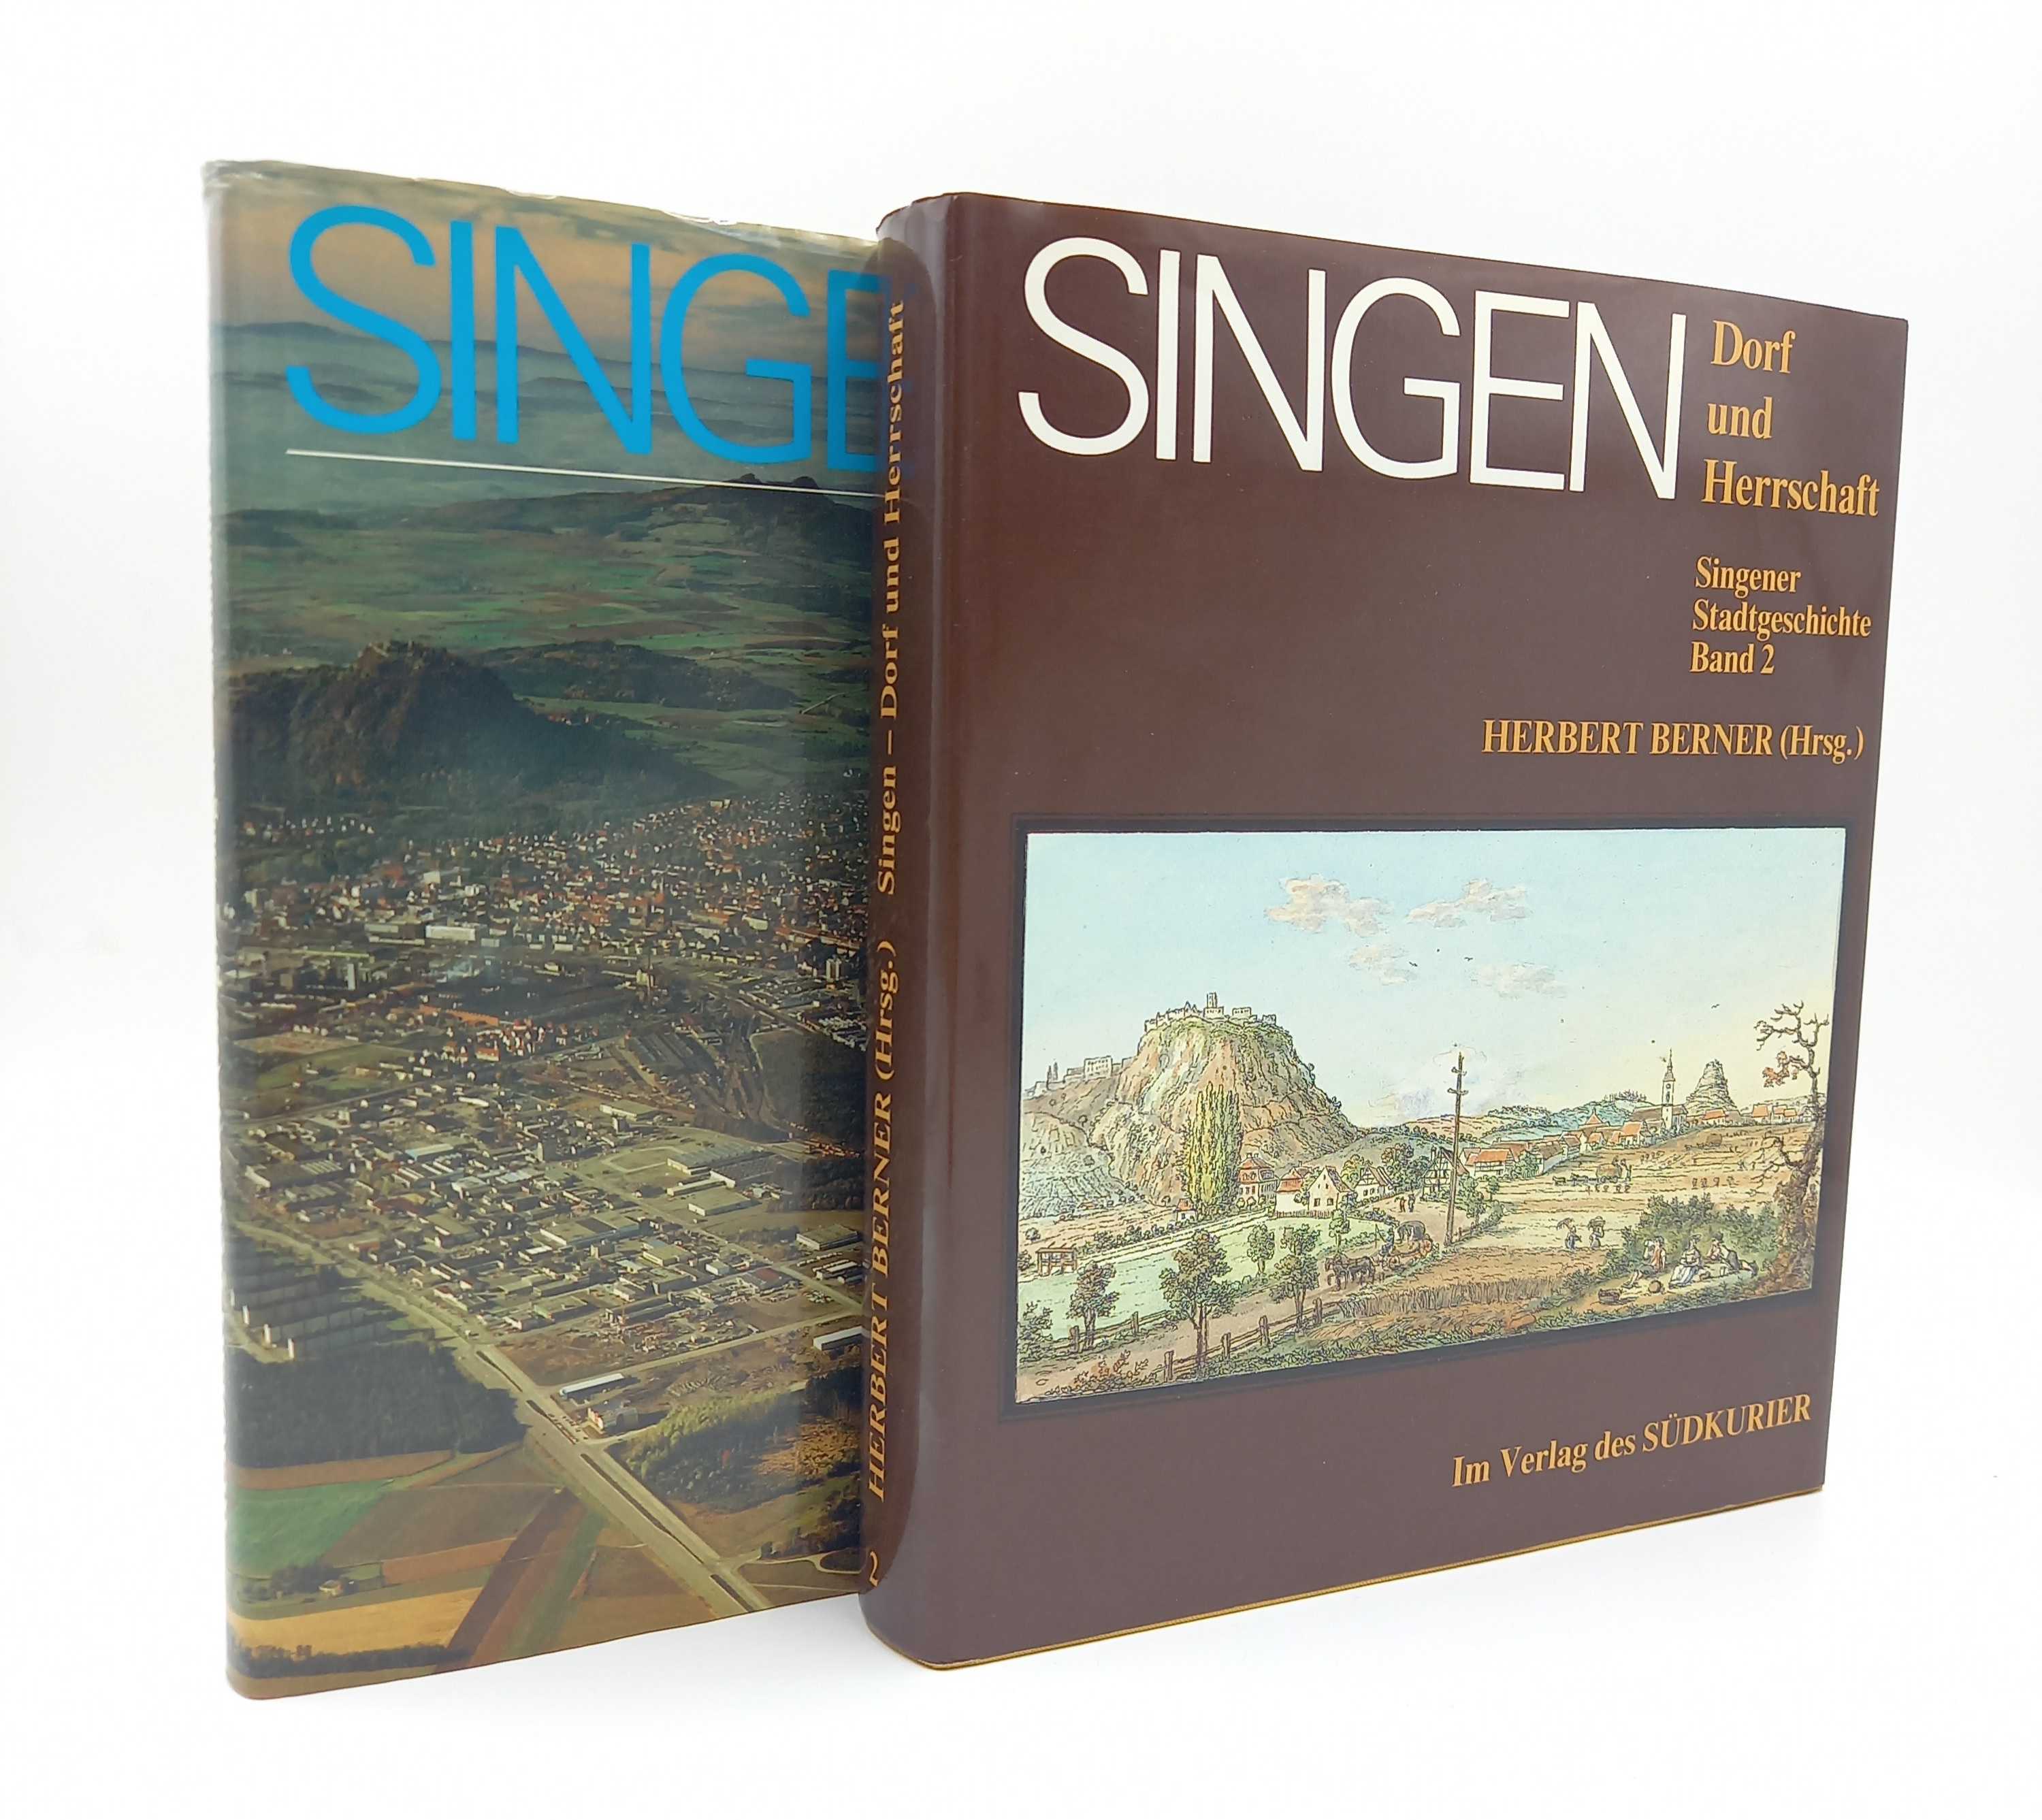 Singen: Ziehmutter des Hegaus / Singen: Dorf und Herrschaft. Singener Stadtgeschichte, Band 1 und 2 - Berner, Herbert [Hrsg.]